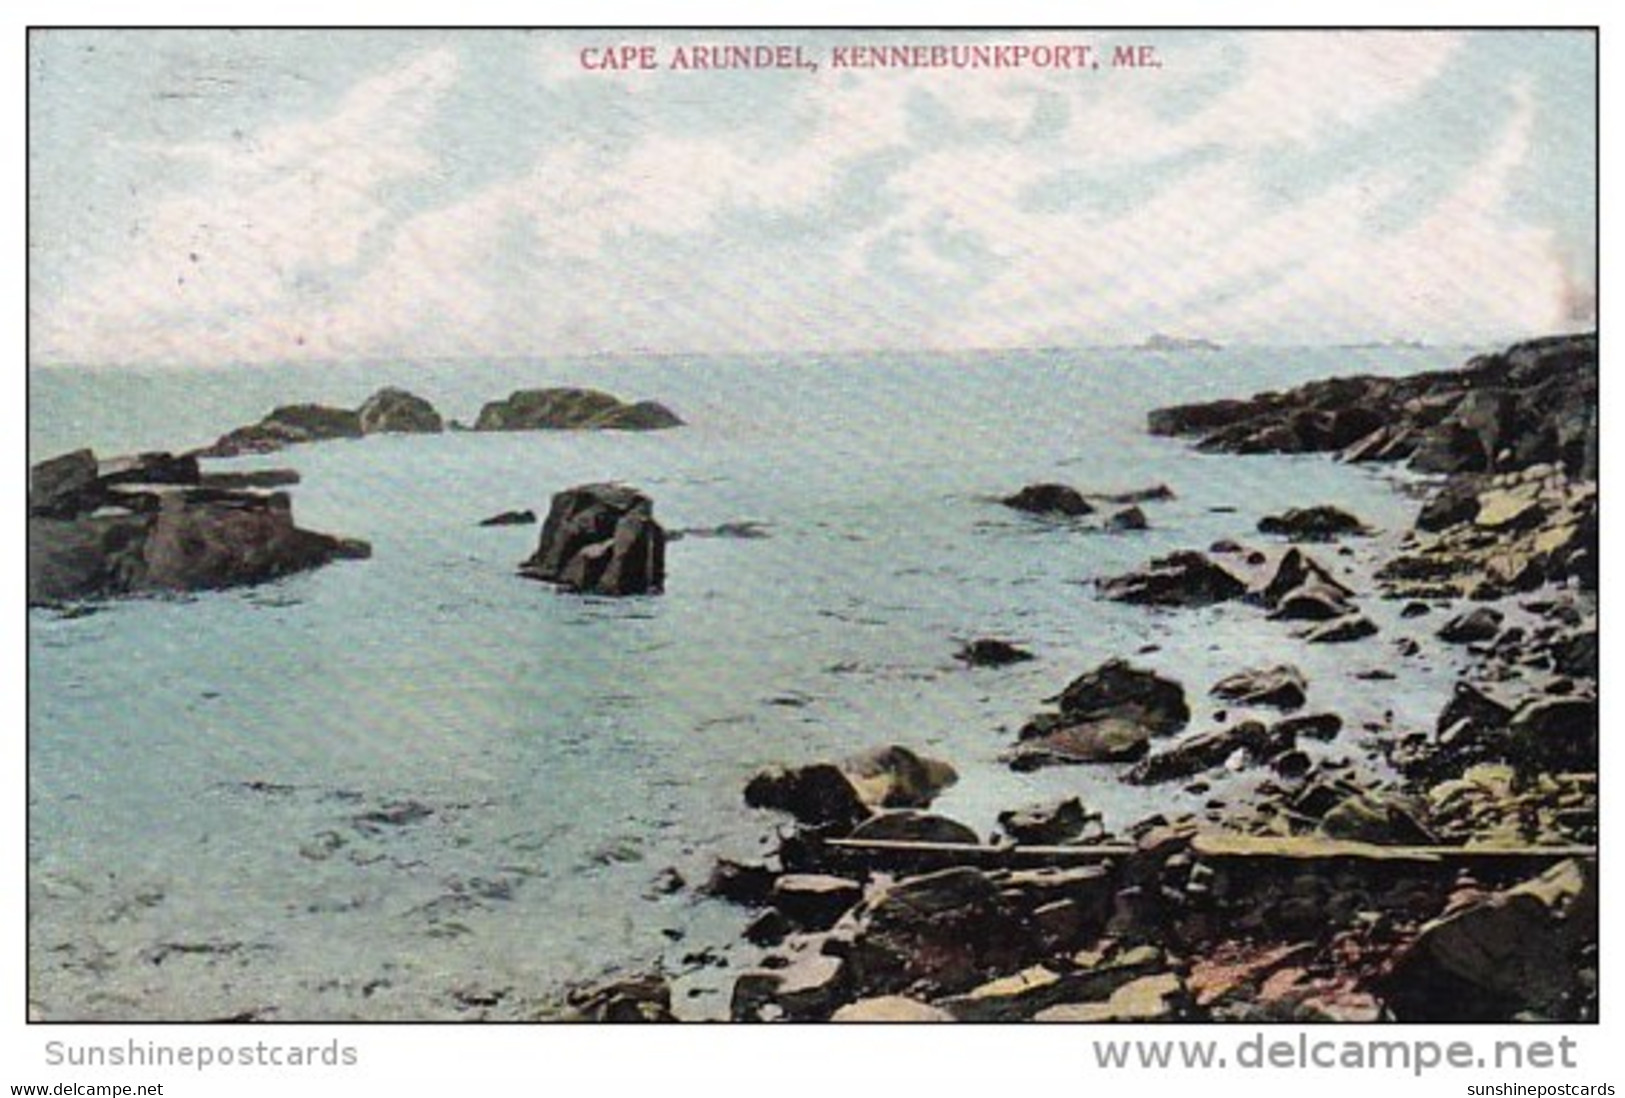 Cape Arundel Kennebunkport Maine - Kennebunkport